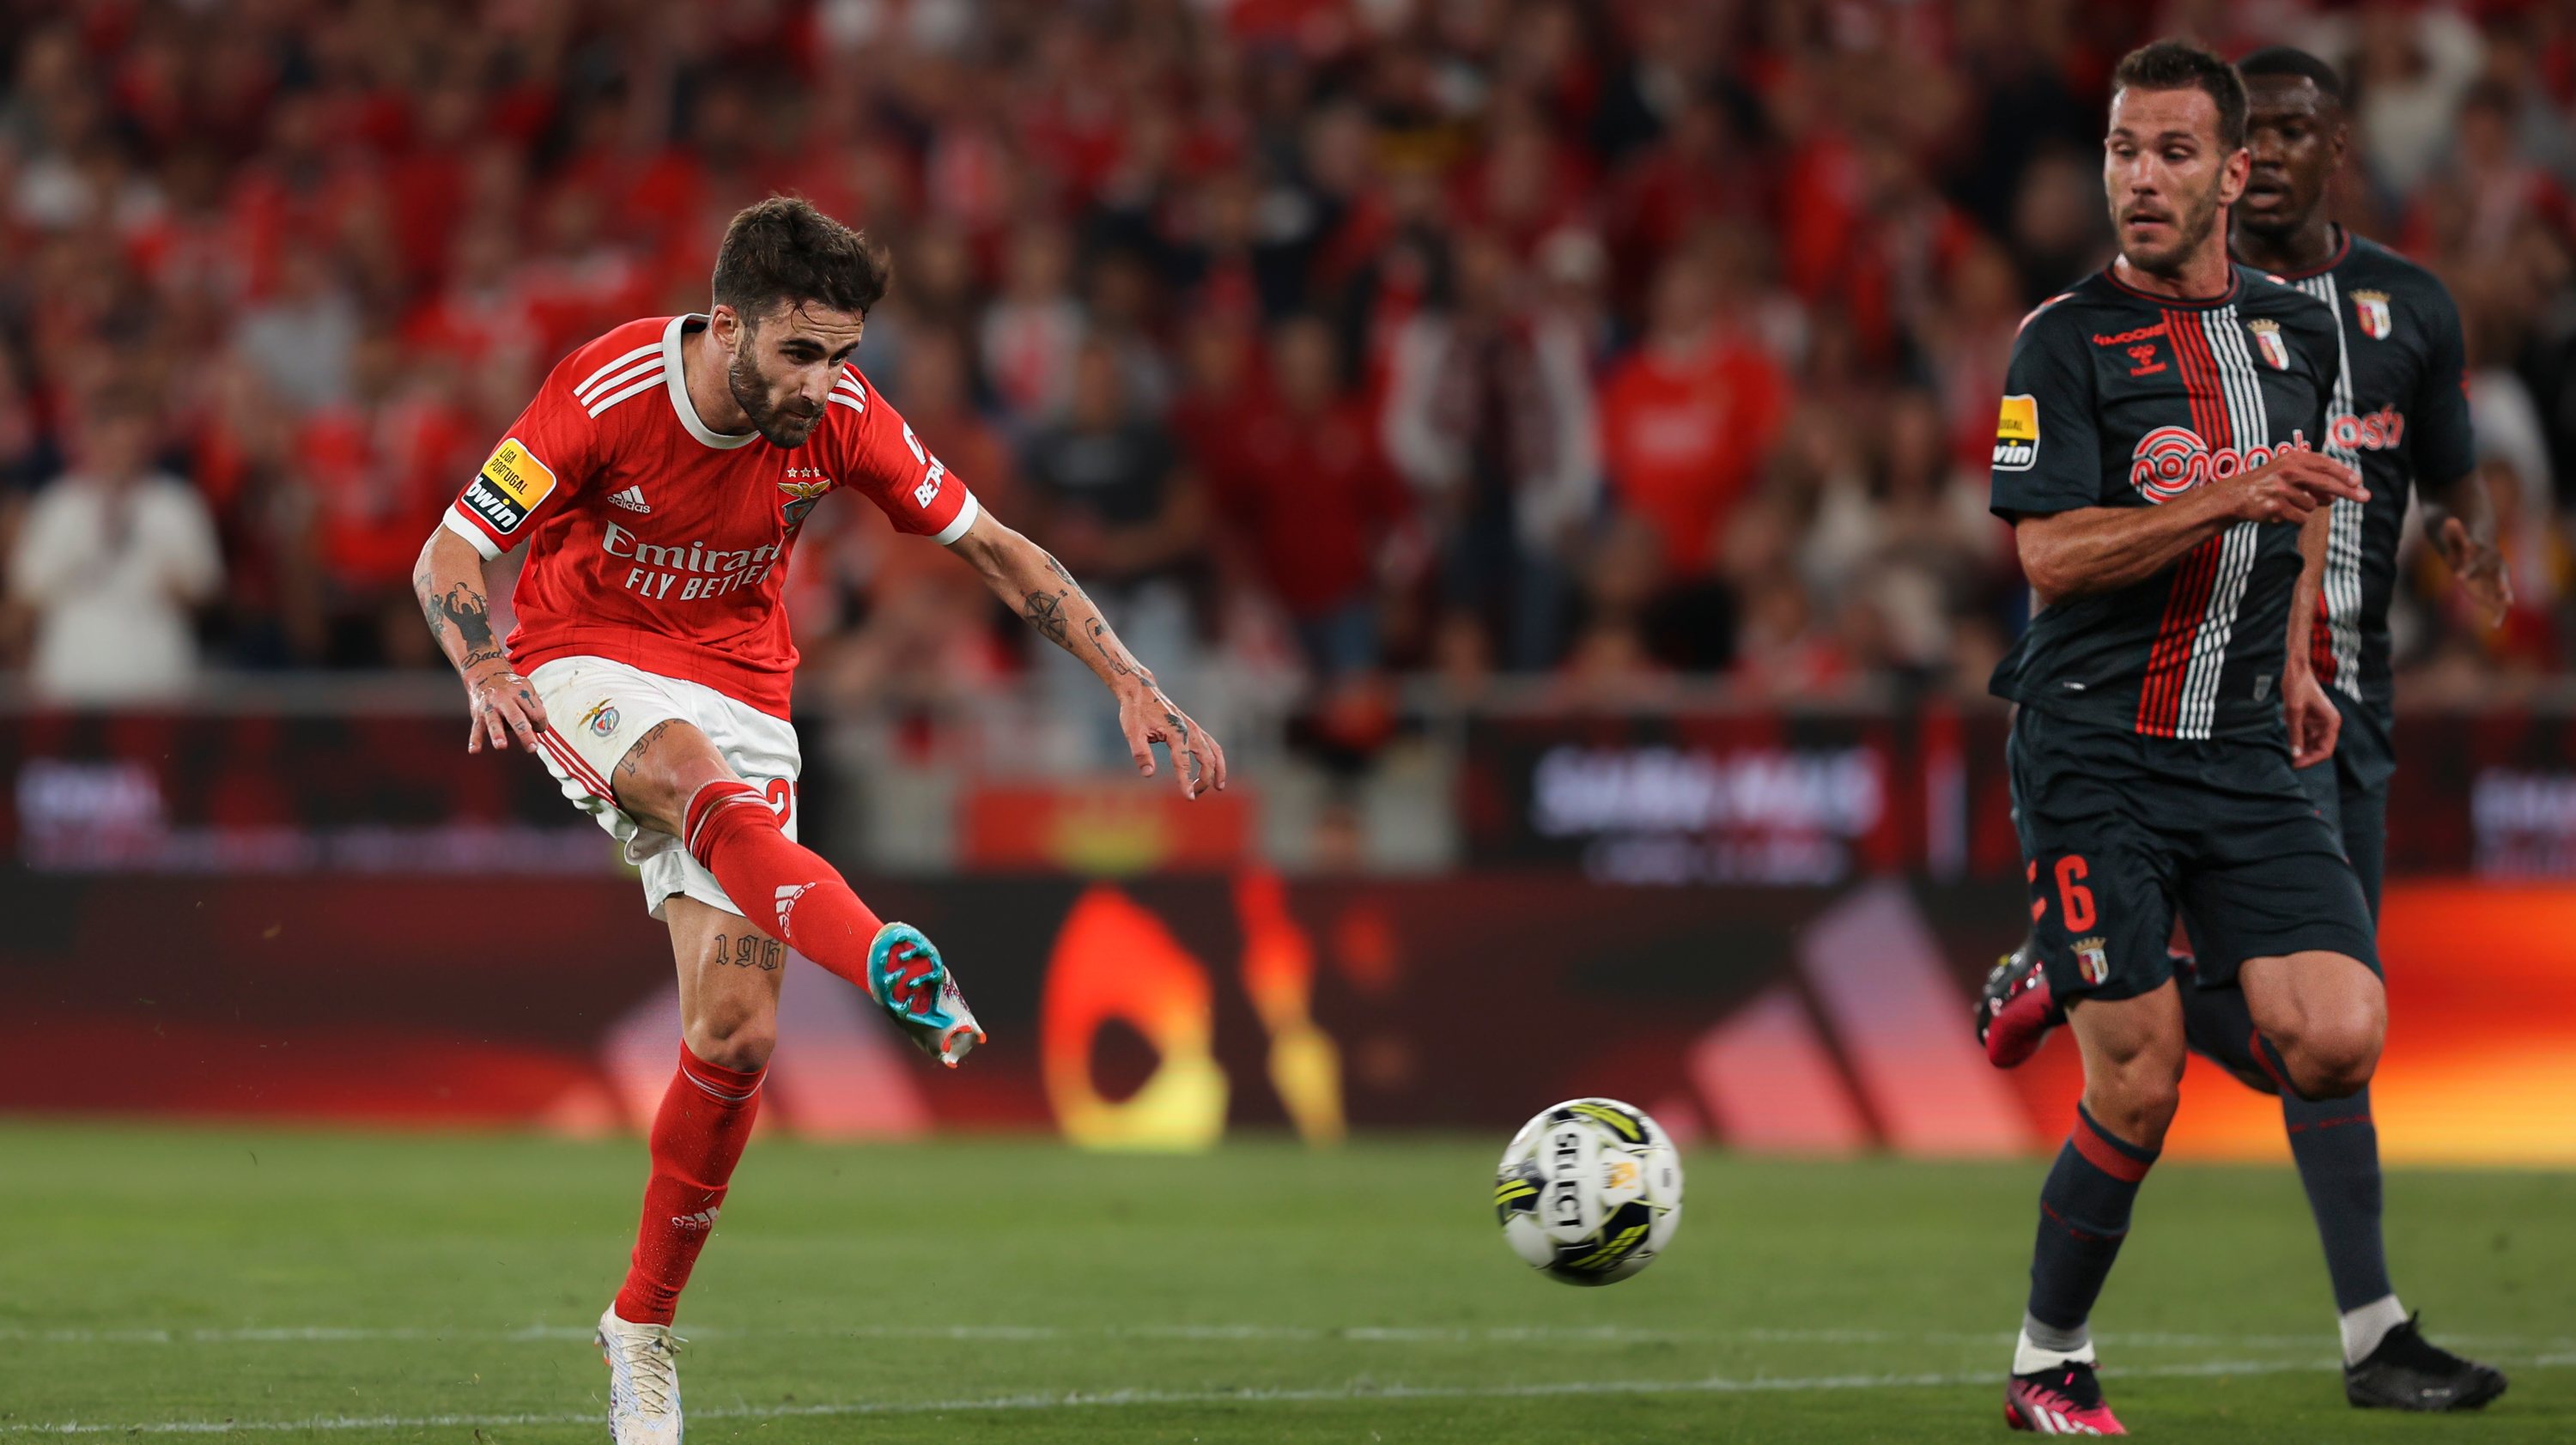 Rafa marcou o único golo na partida que permitiu ao Benfica guardar o primeiro lugar.